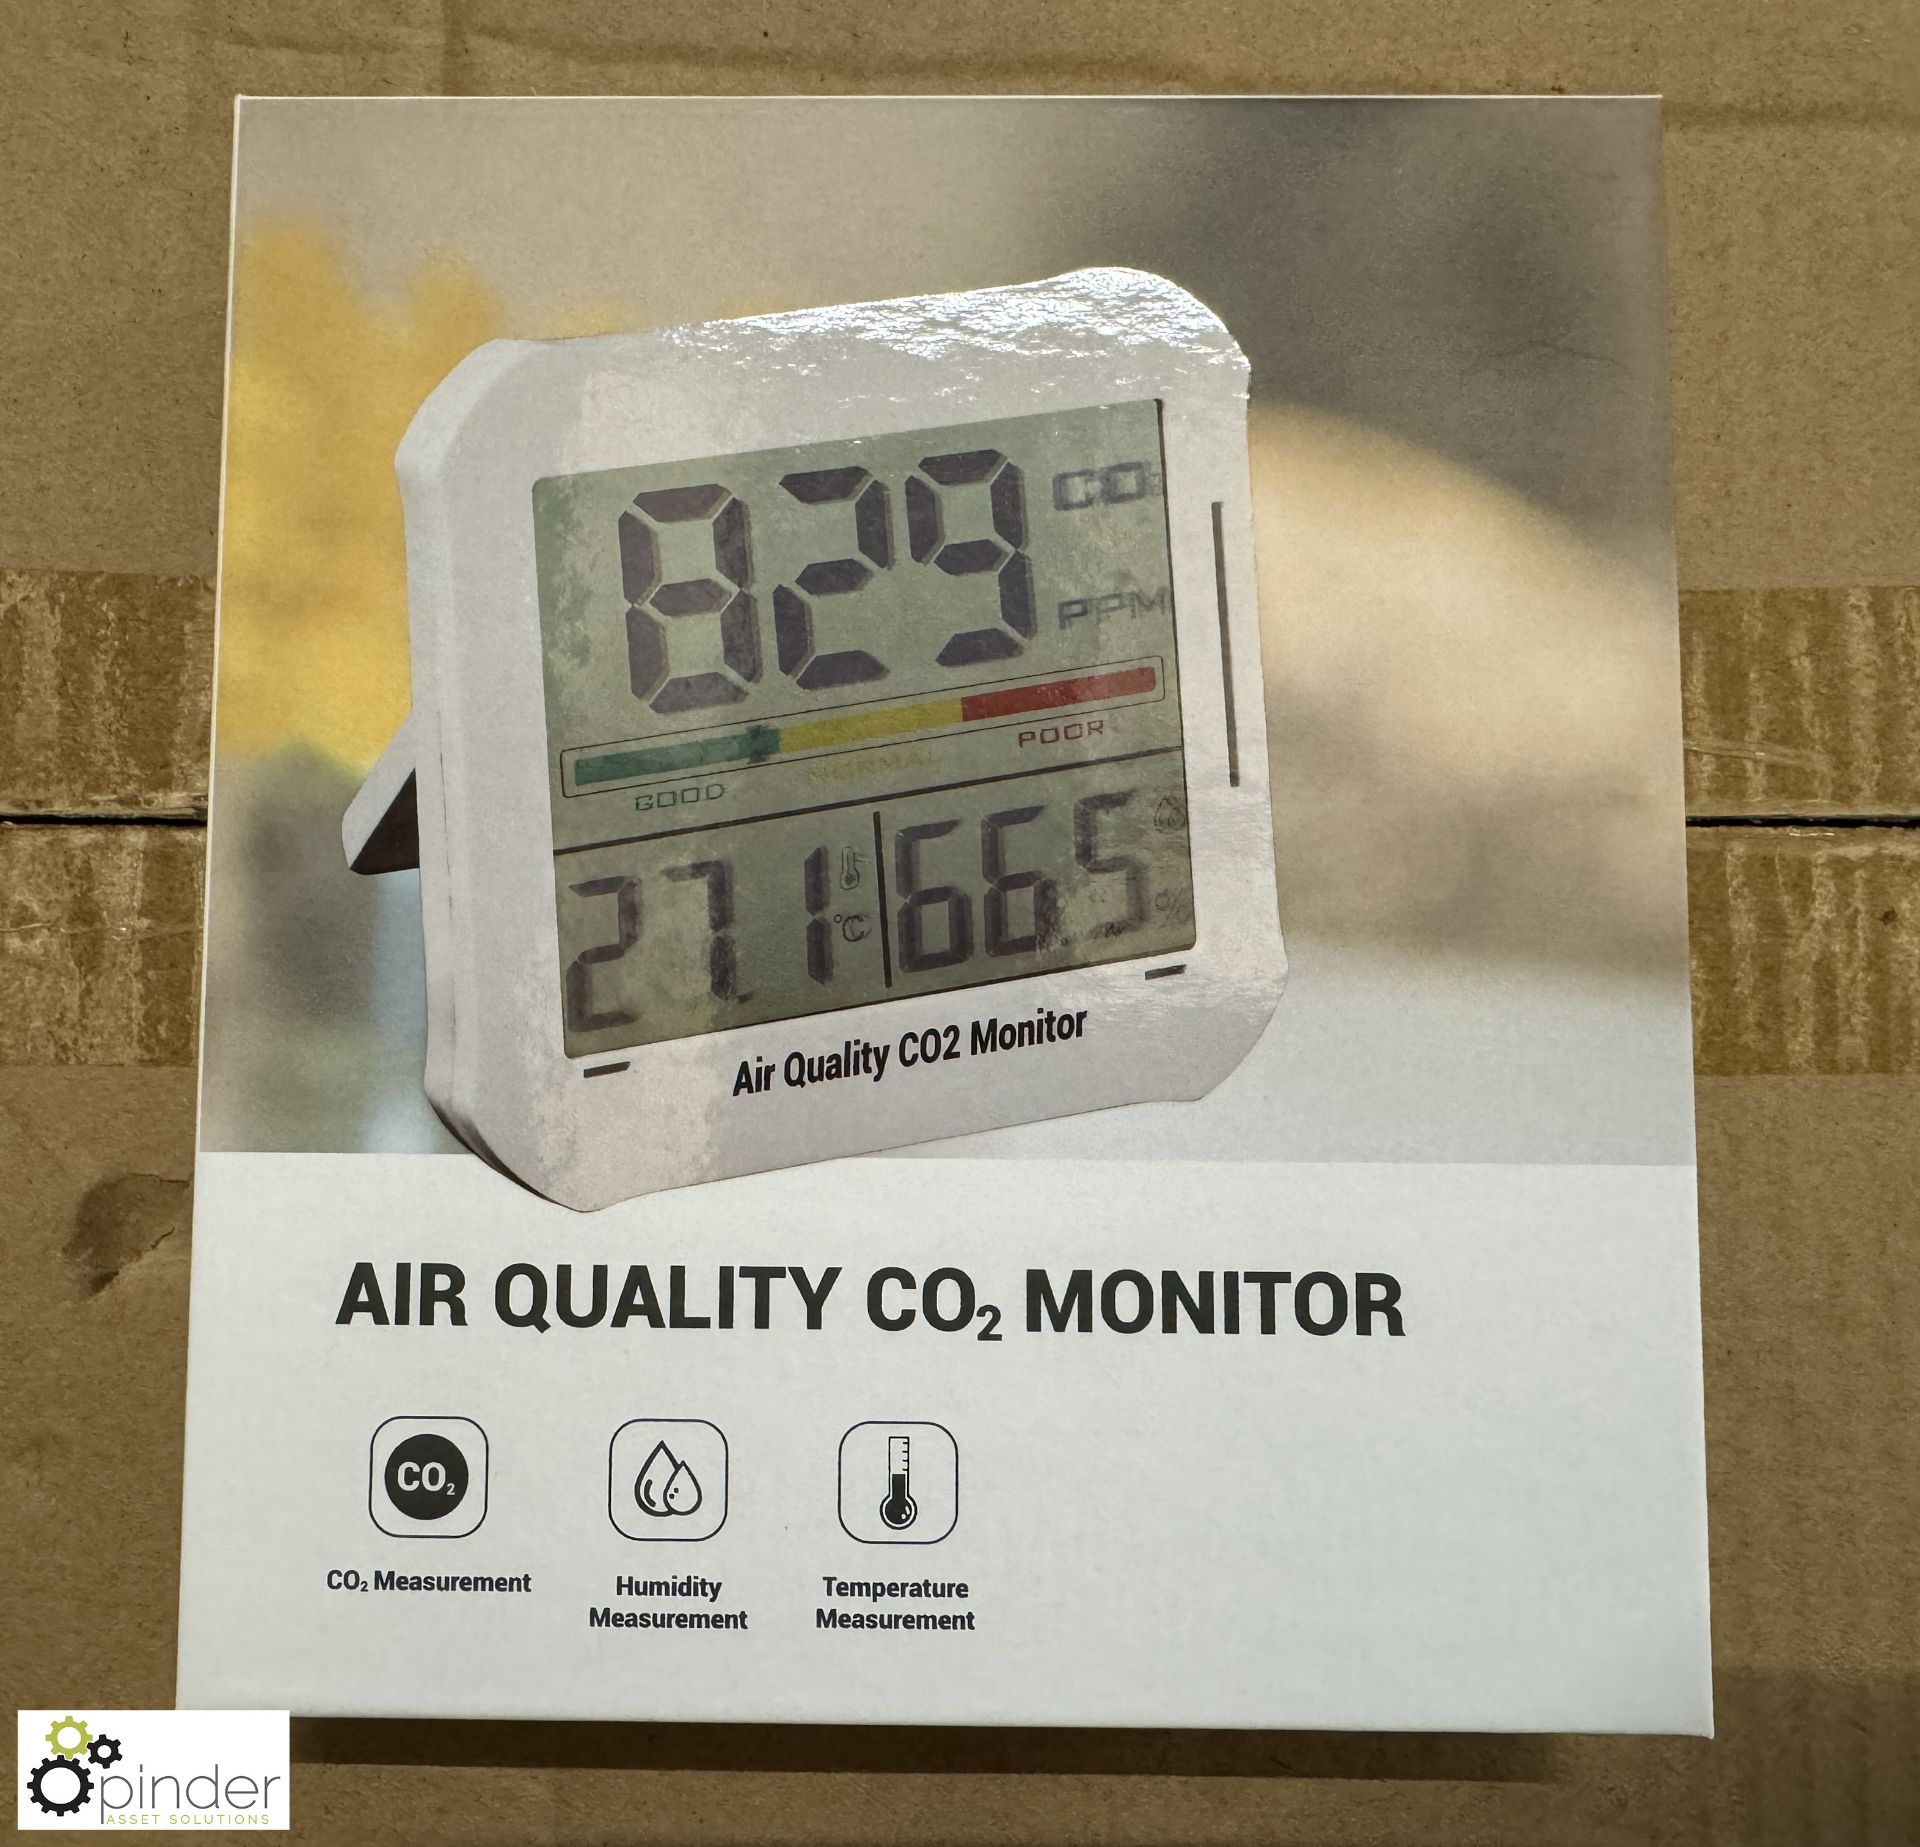 8 cartons Air Quality Co2 Monitors, approx. 40 per carton